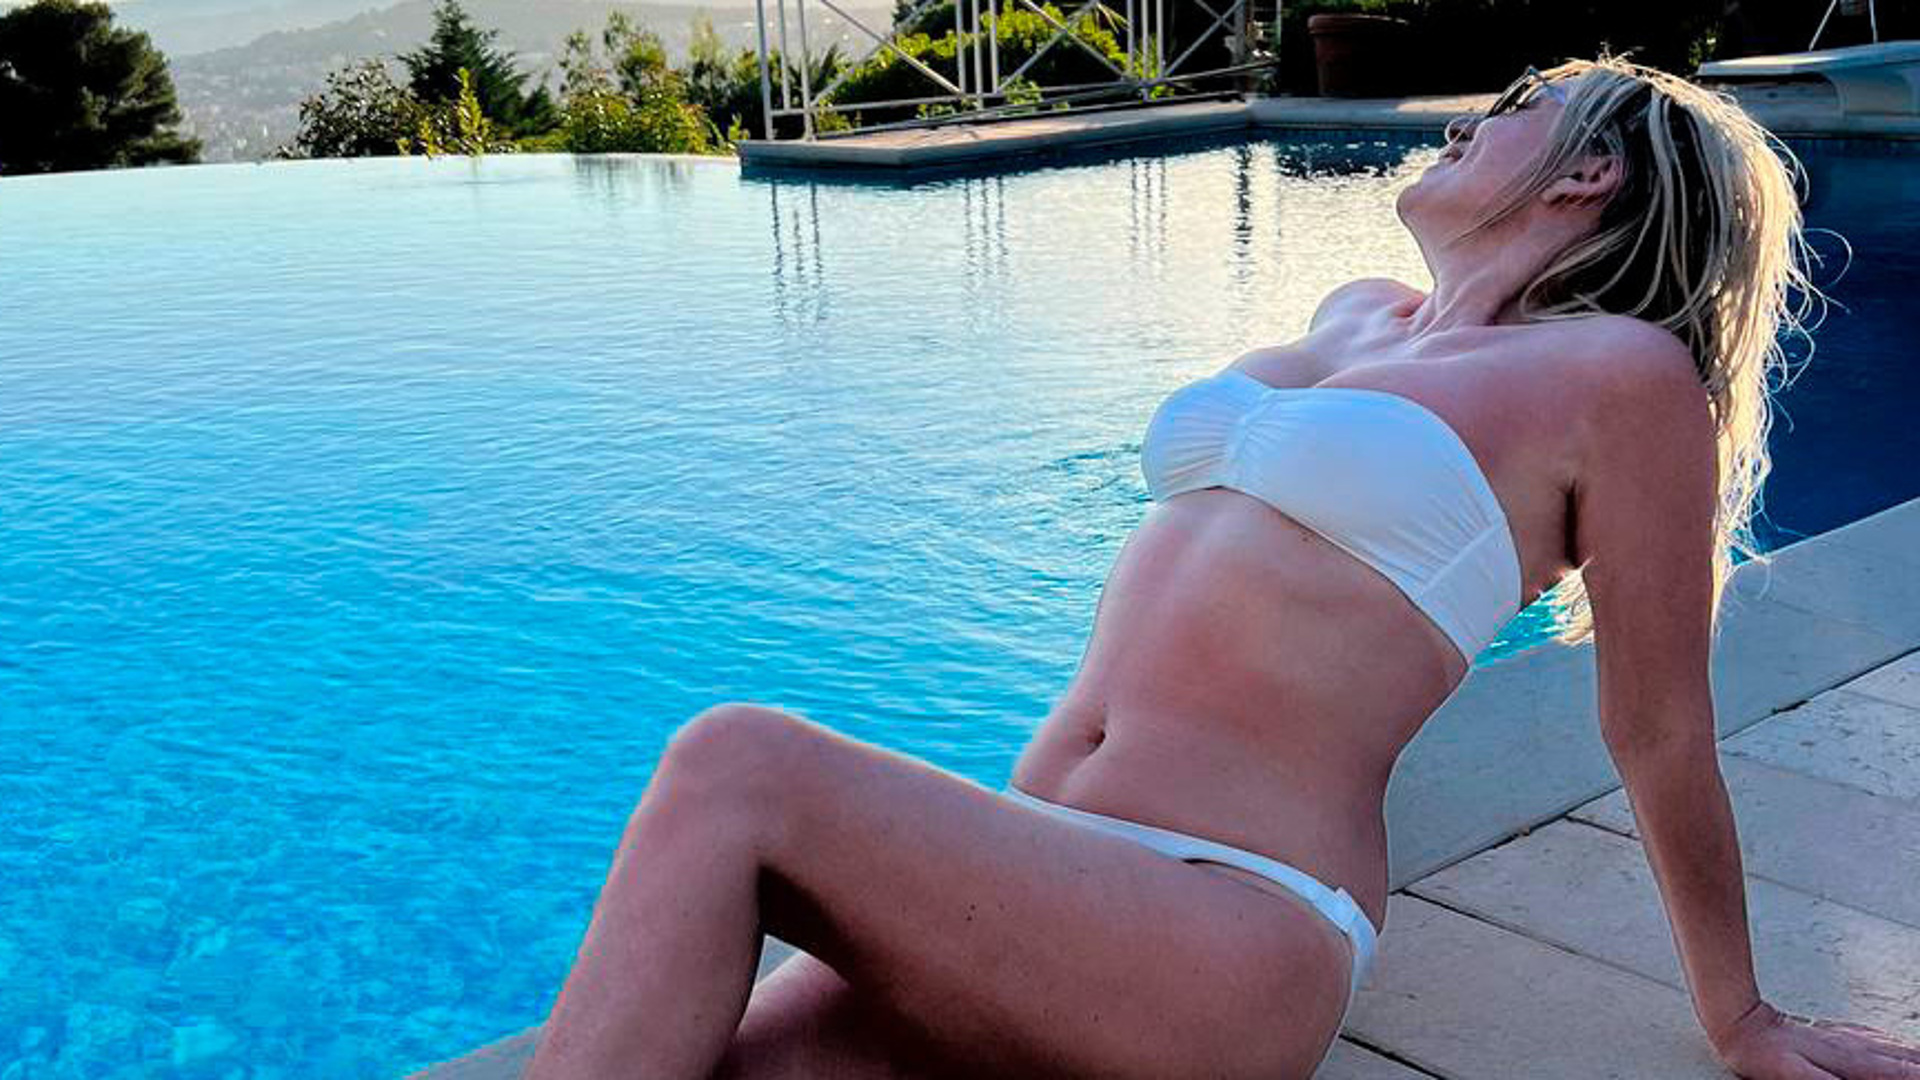 Ирине Салтыковой не удалось отдохнуть спокойно - ее сфотографировали в купальнике